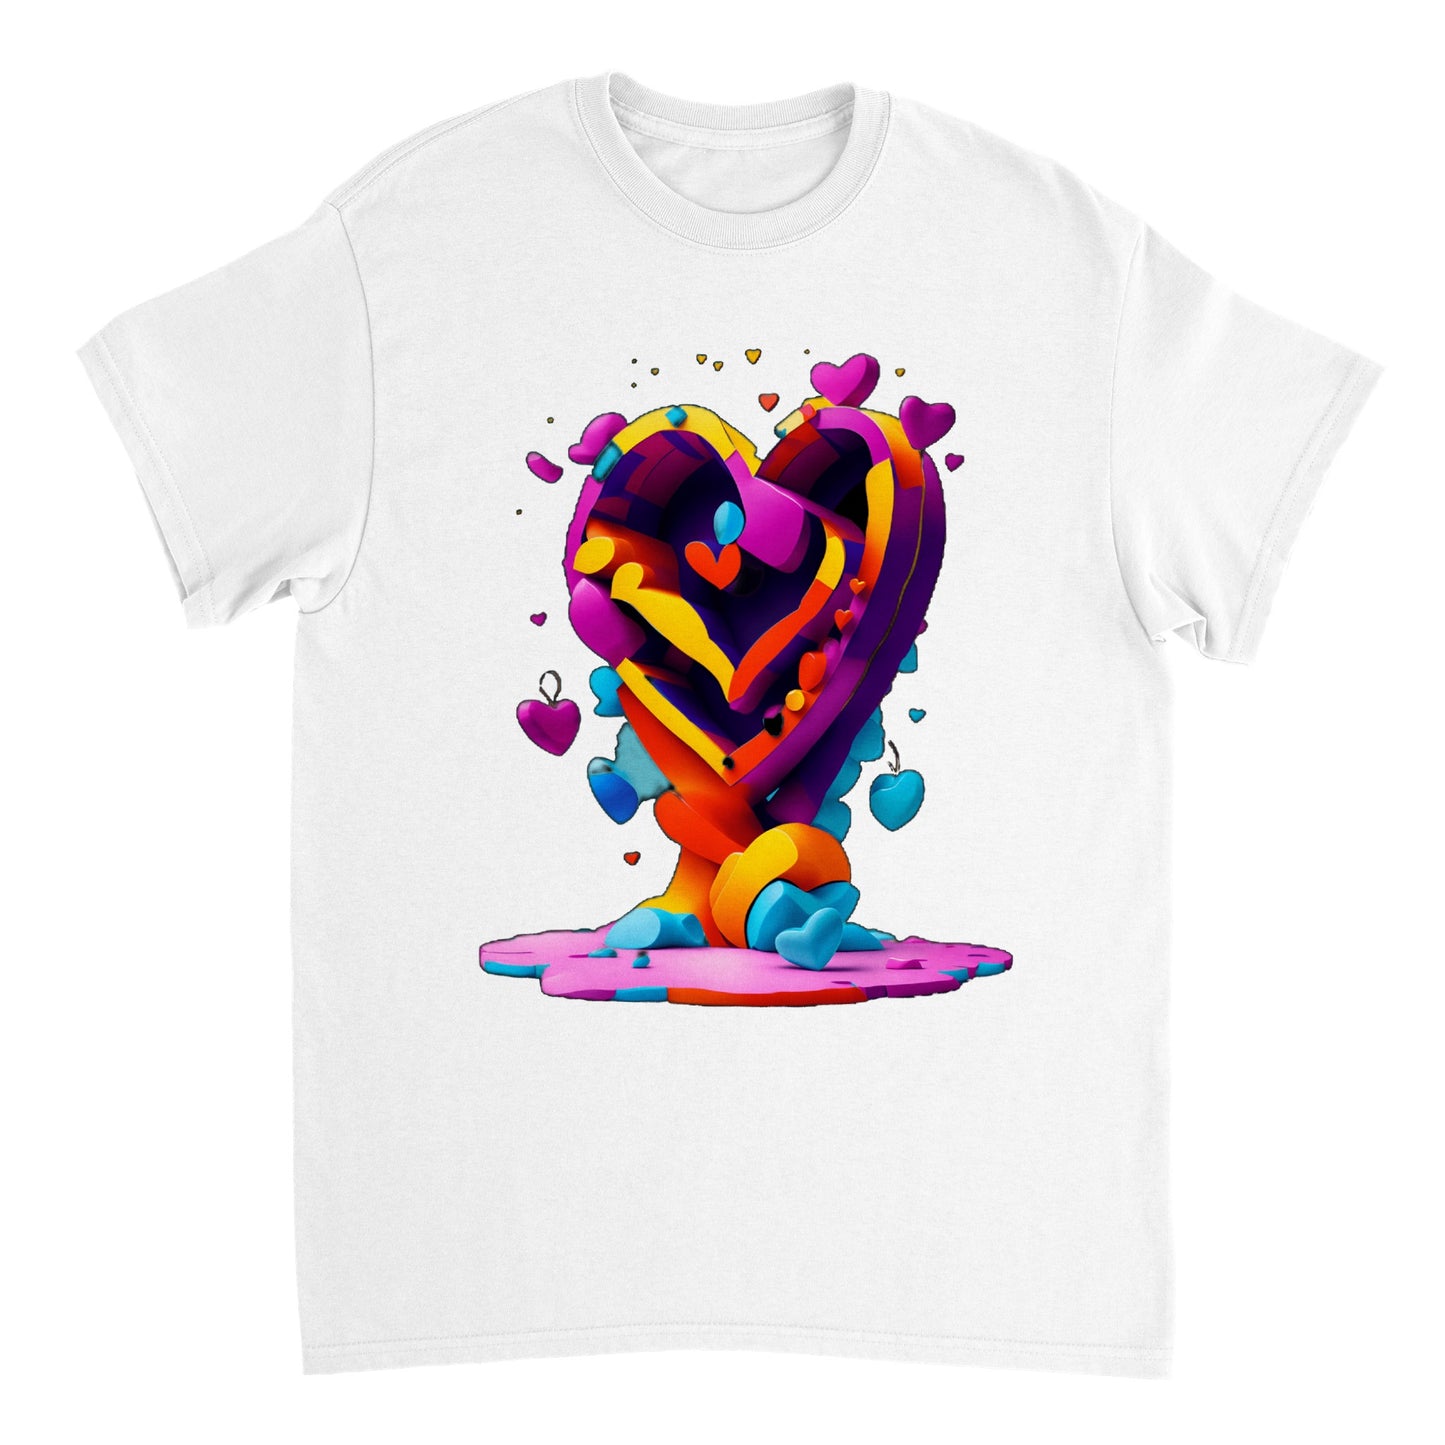 Love Heart - Heavyweight Unisex Crewneck T-shirt 27